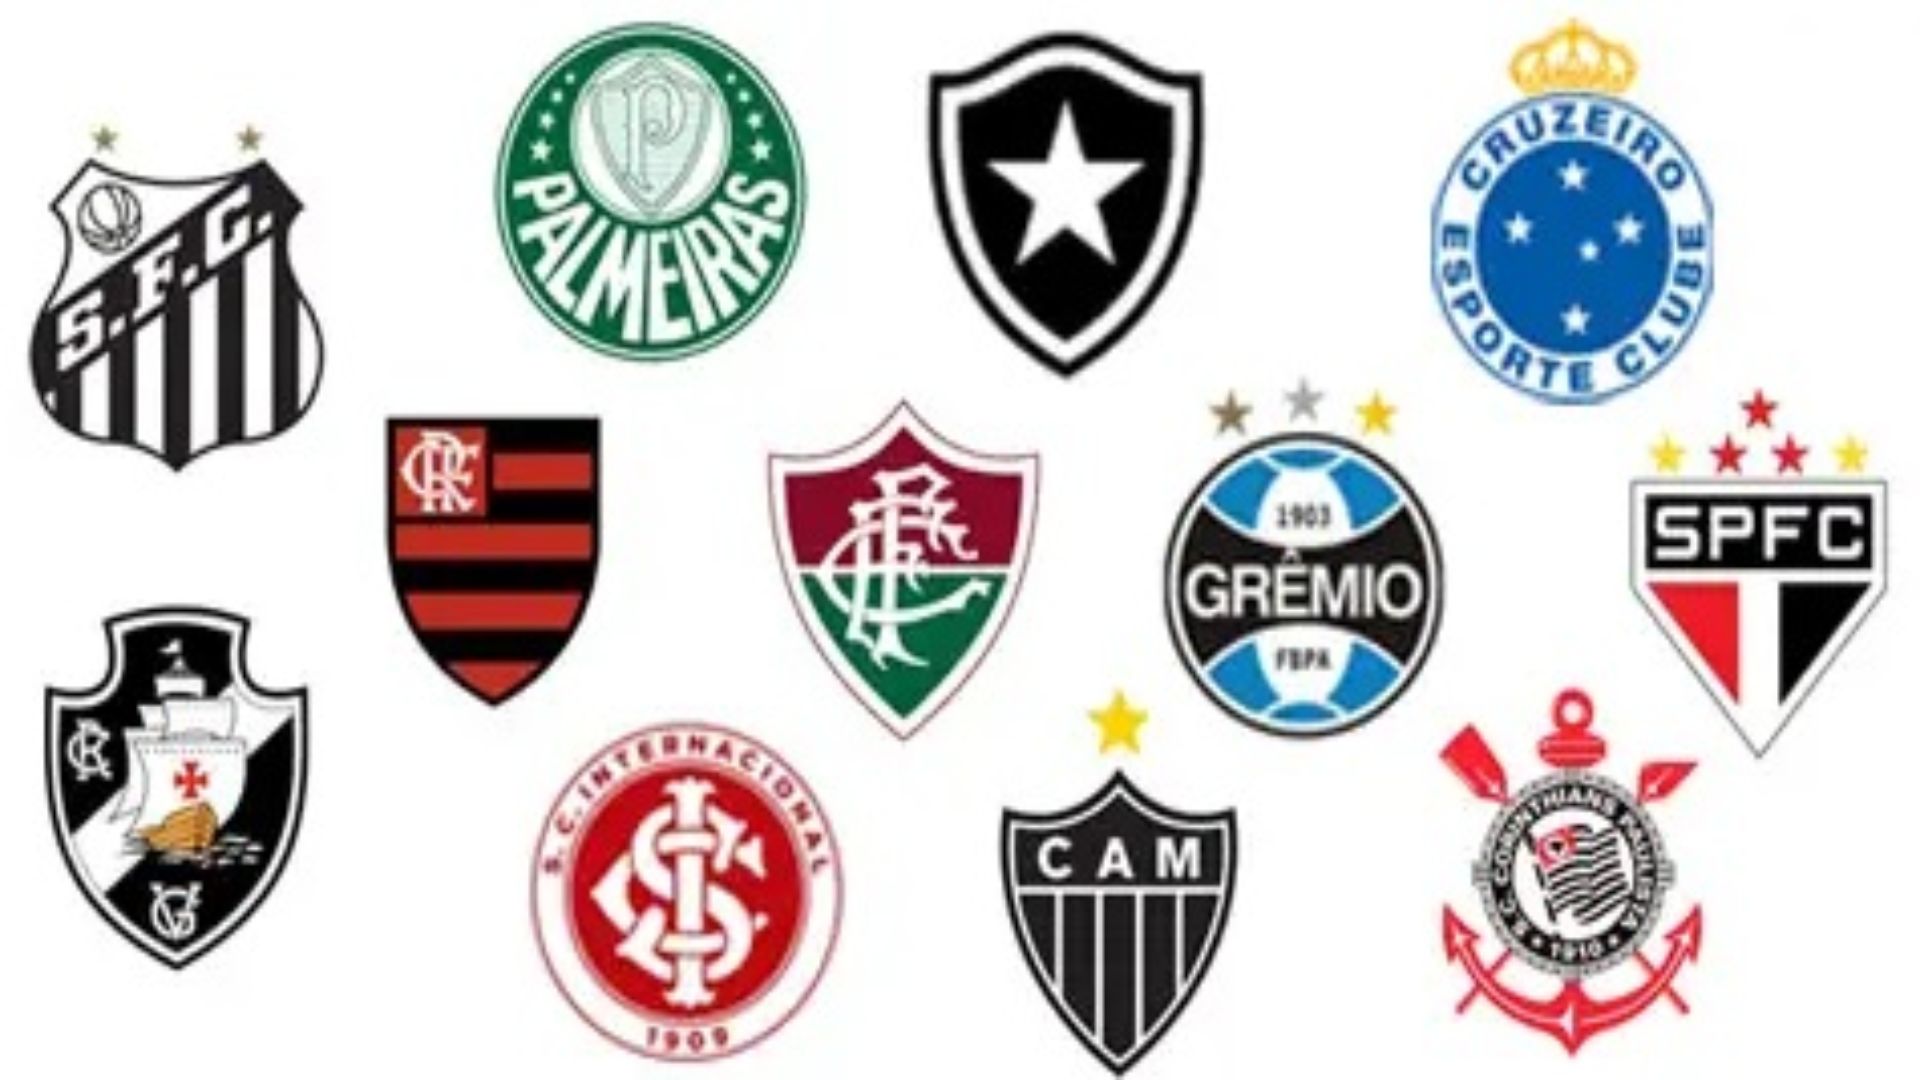 Grandes clubes do futebol brasileiro se mostraram preocupados com a ação do governo